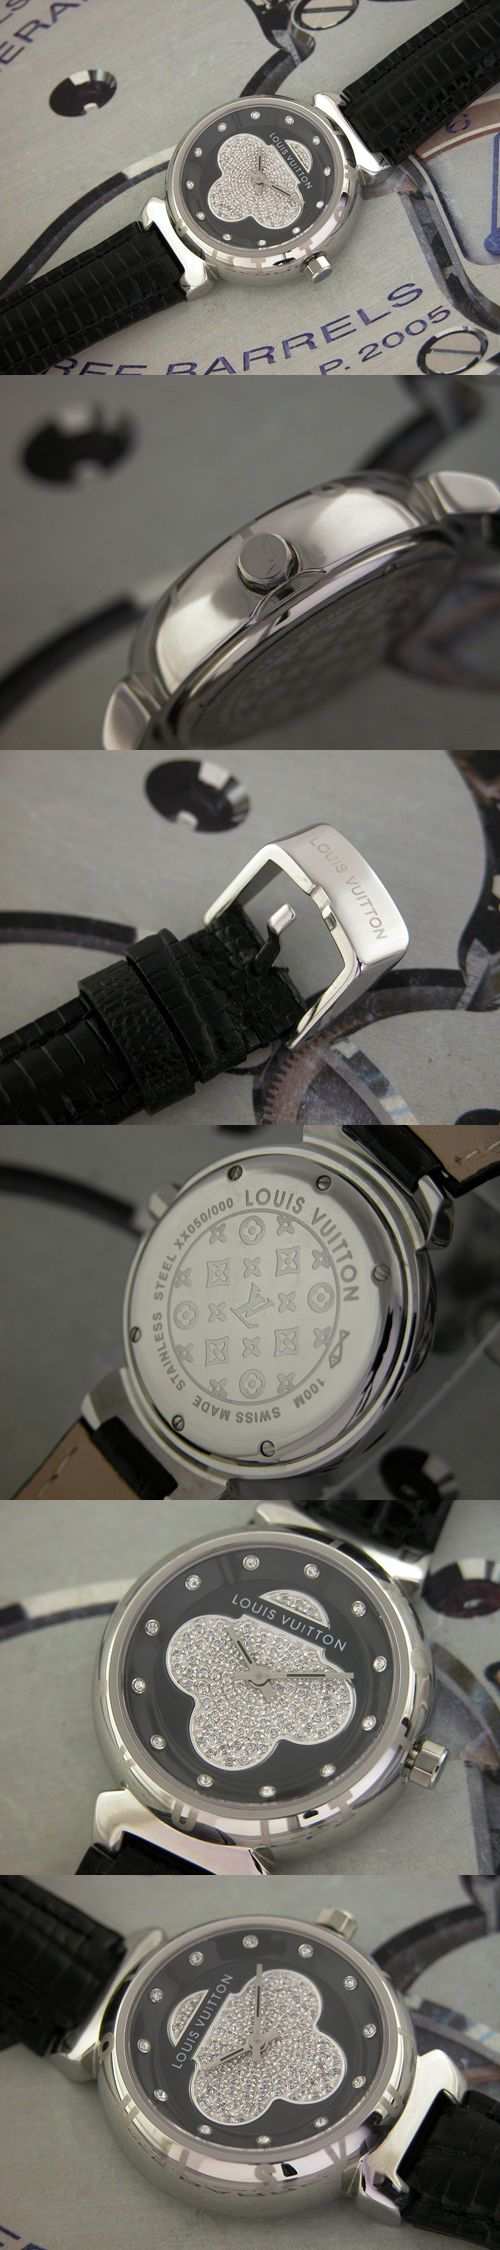 おしゃれなブランド時計がルイヴィトン-タンブール-LOUIS VUITTON-LV00026J-女性用を提供します.